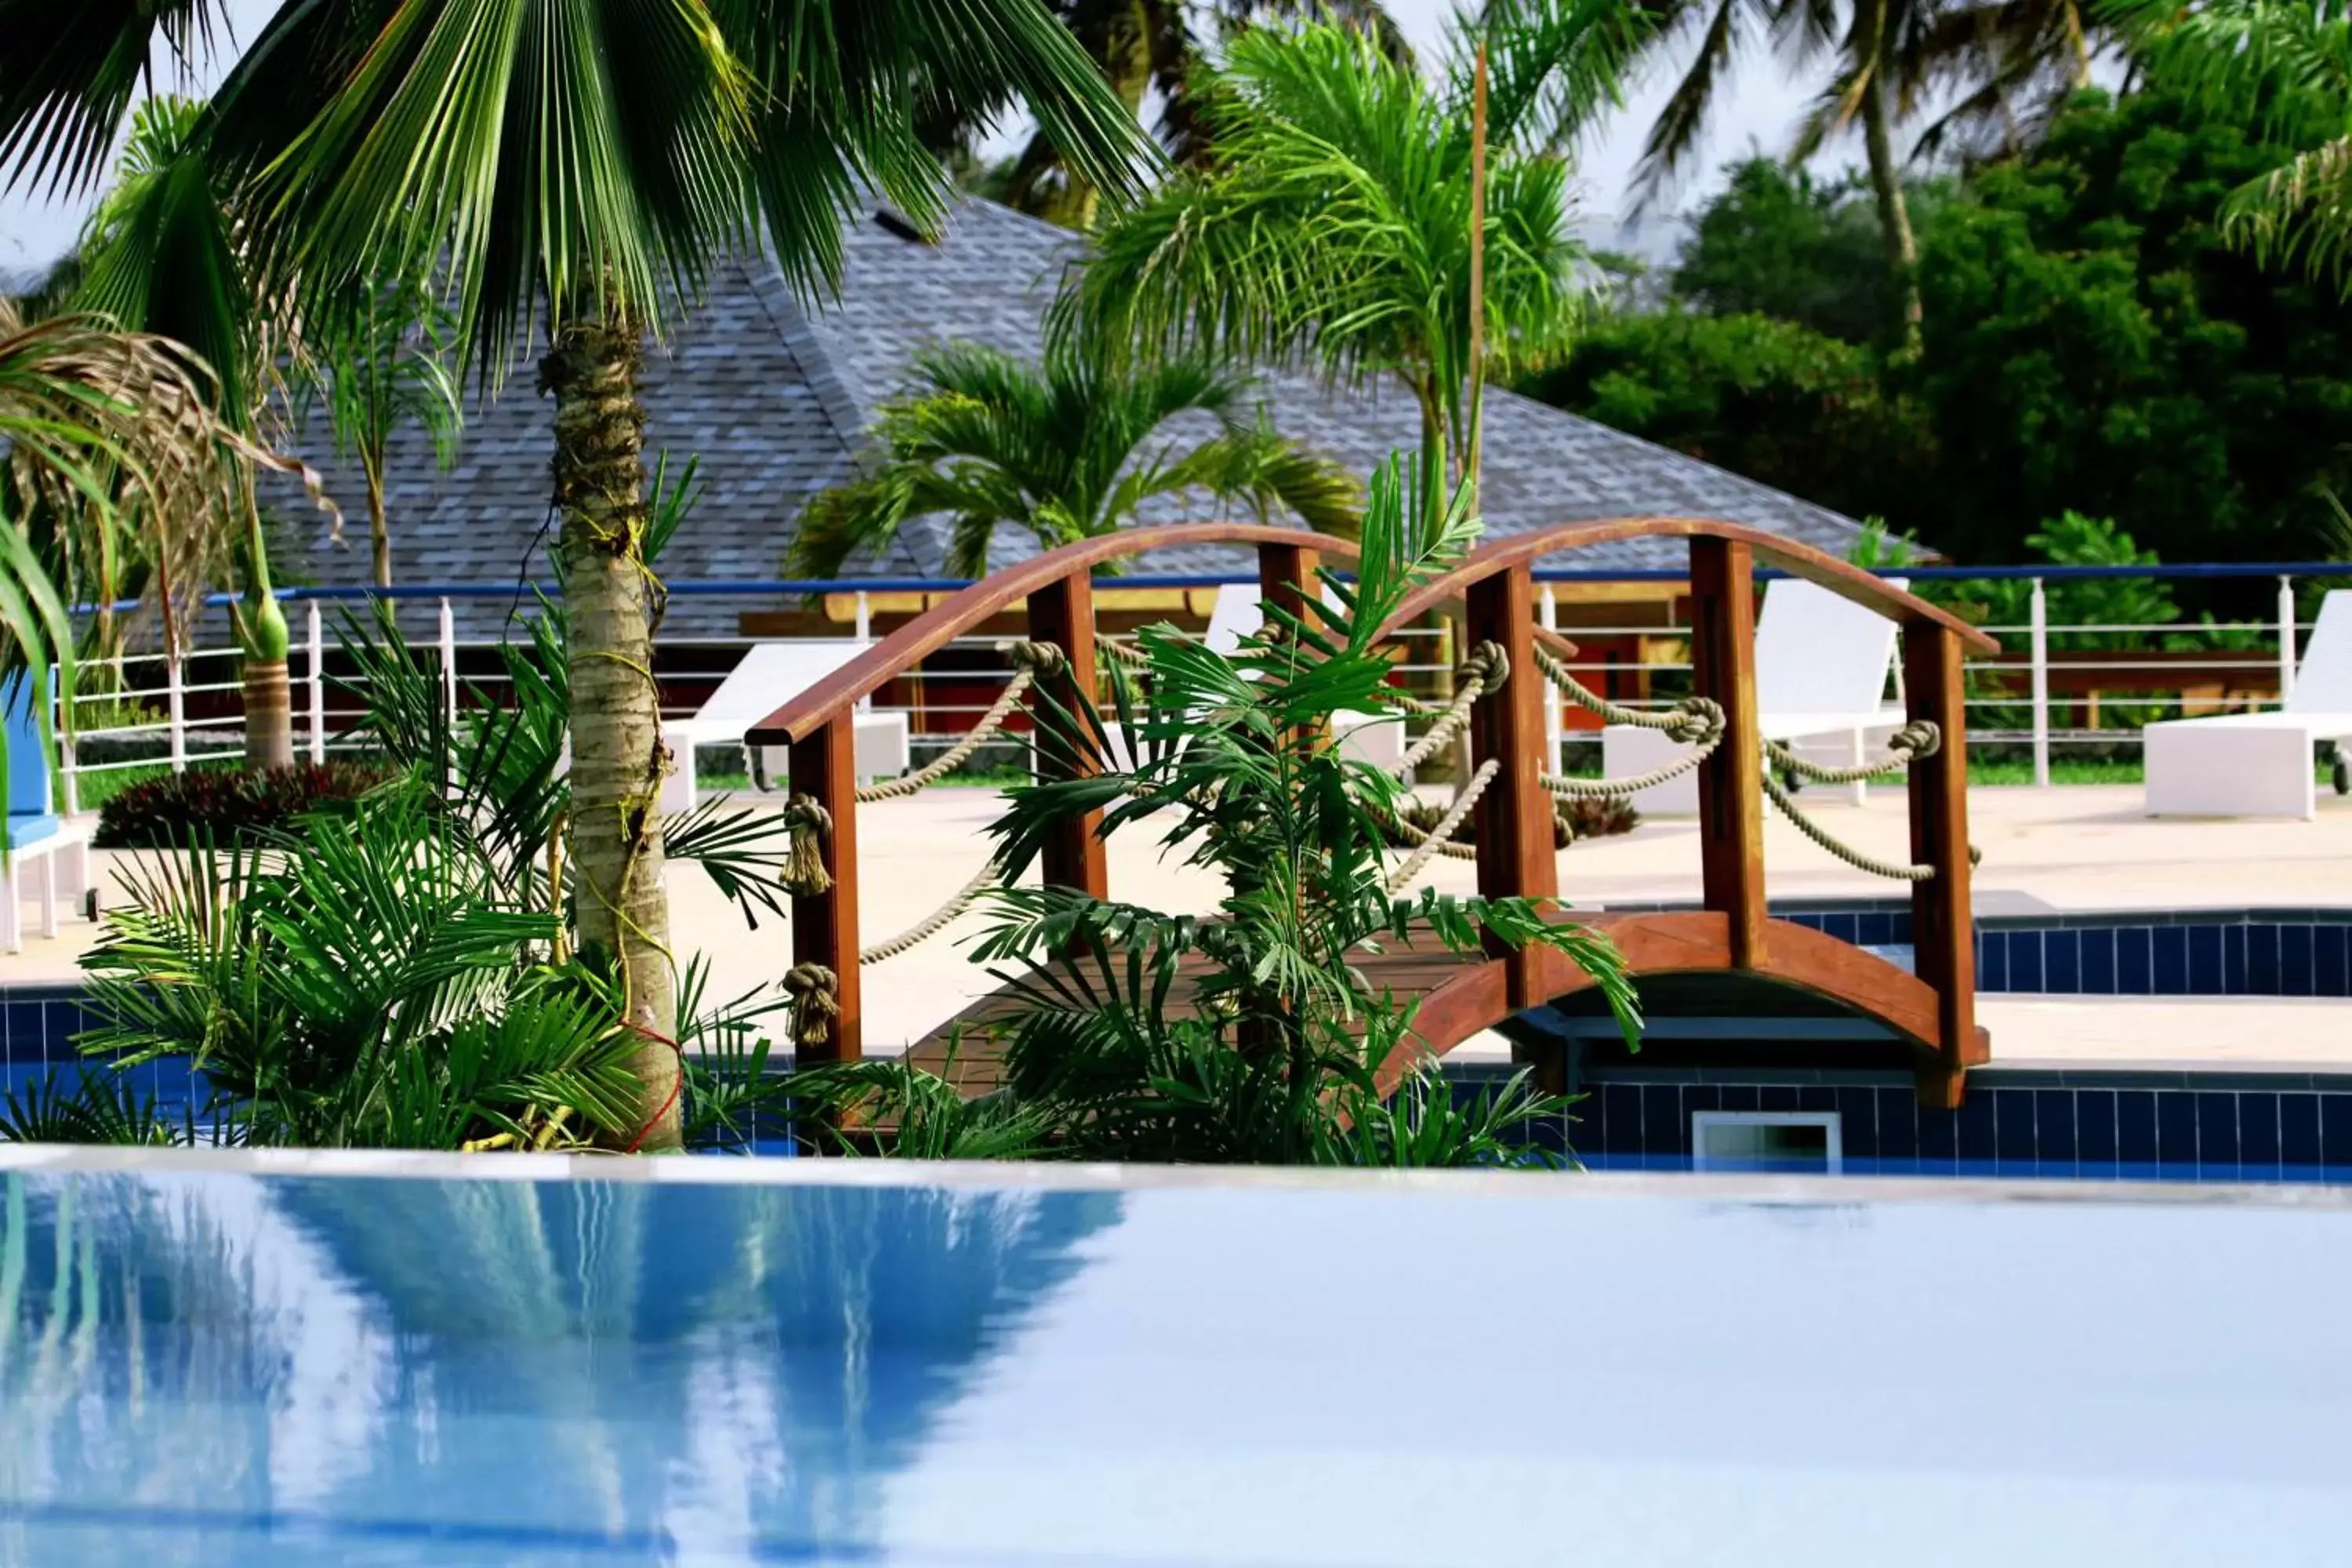 On site, Swimming Pool in Best Western Plus Atlantic Hotel